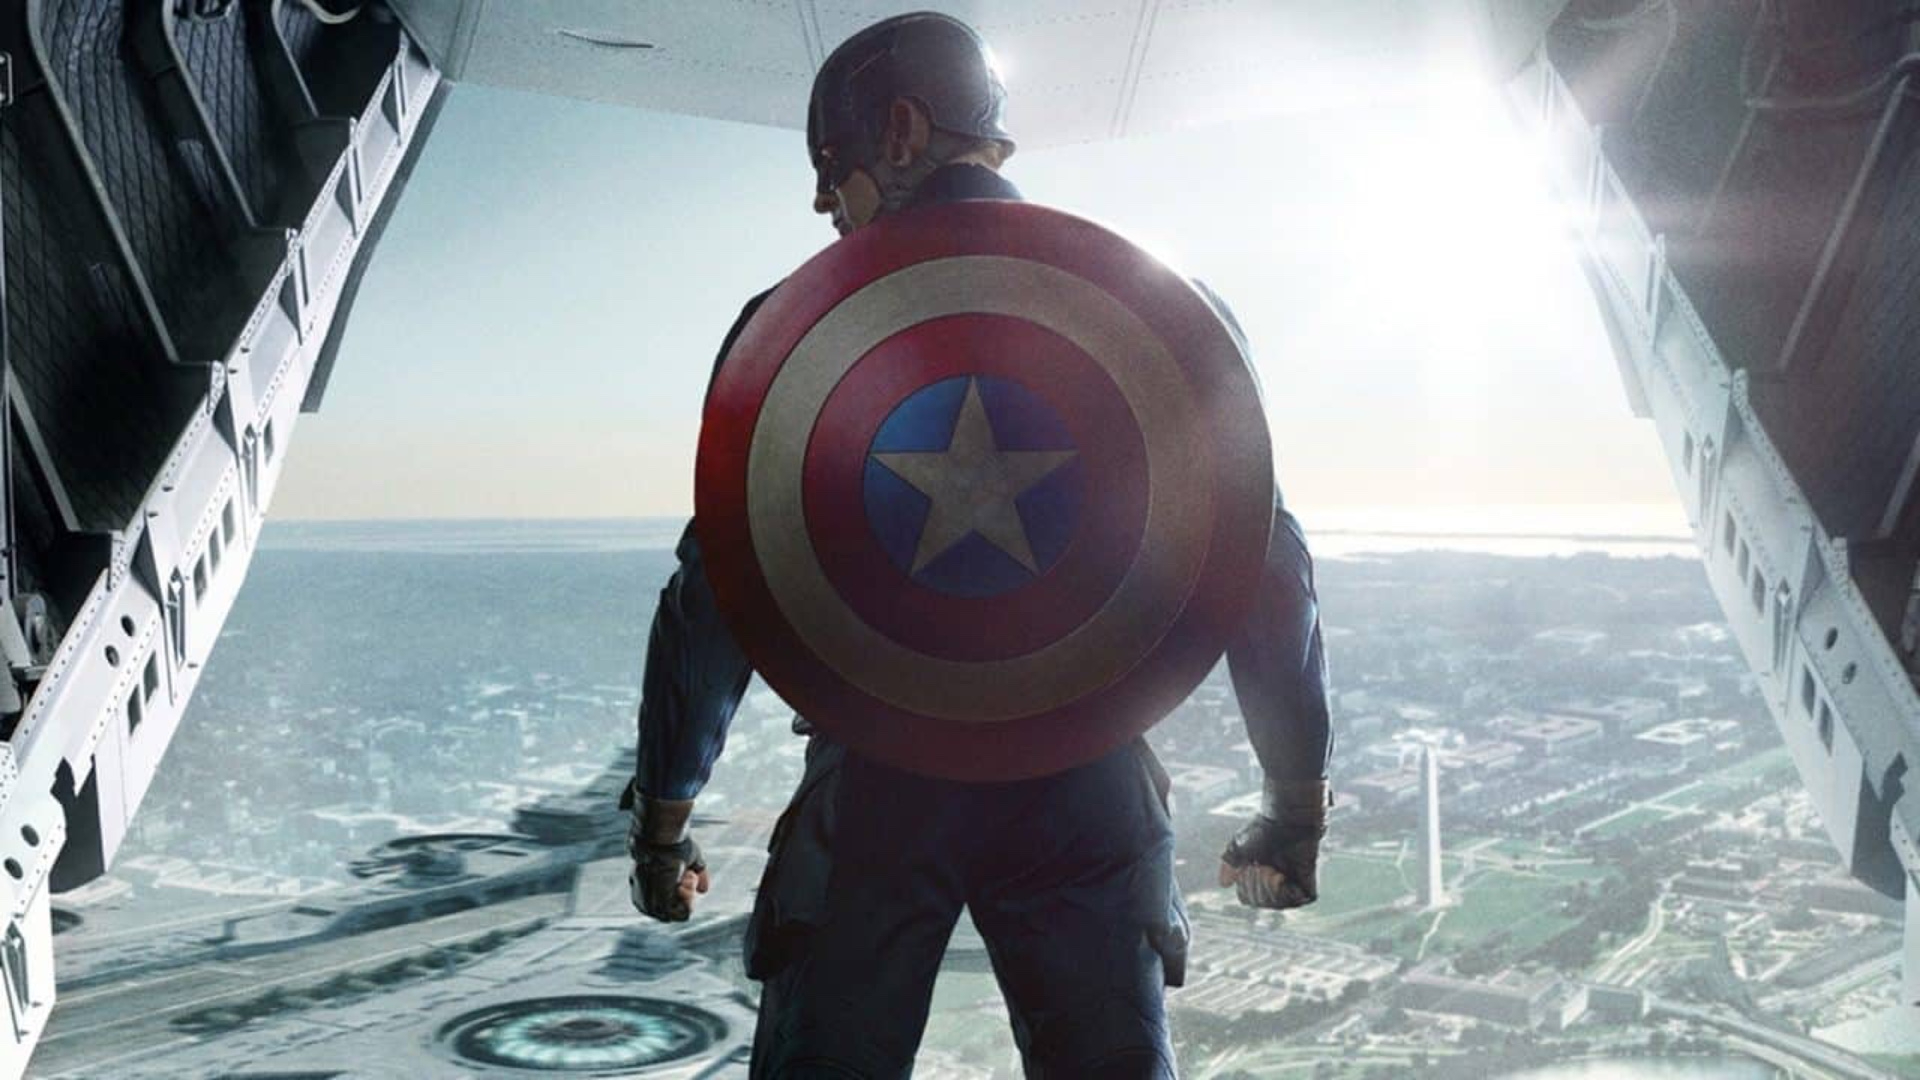 captain america shield